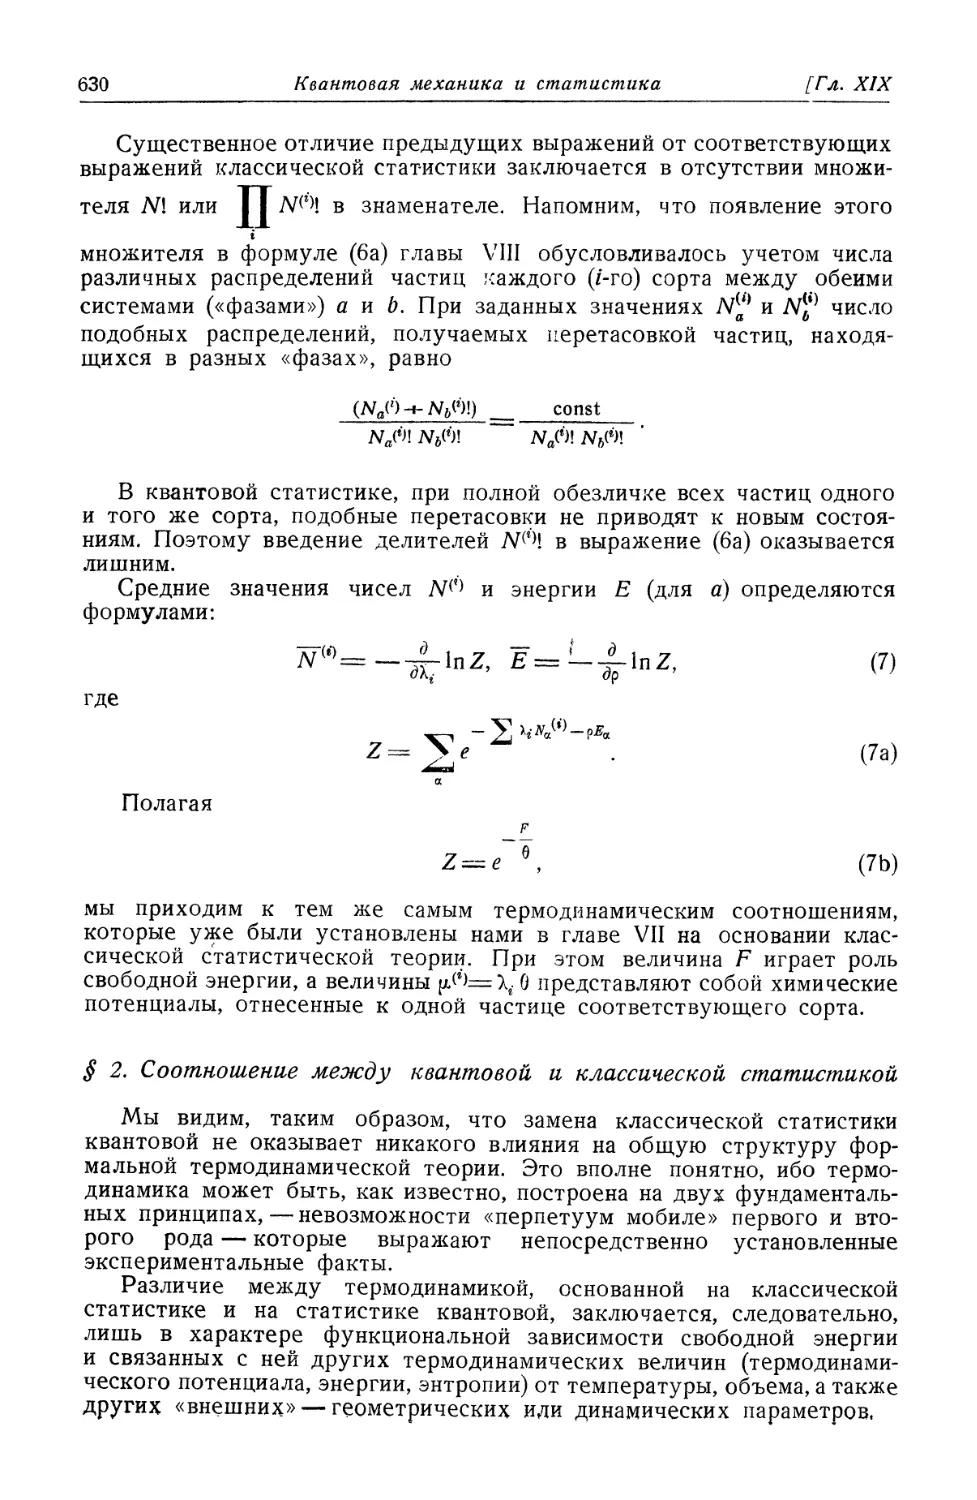 § 2. Соотношение между квантовой и классической статистикой